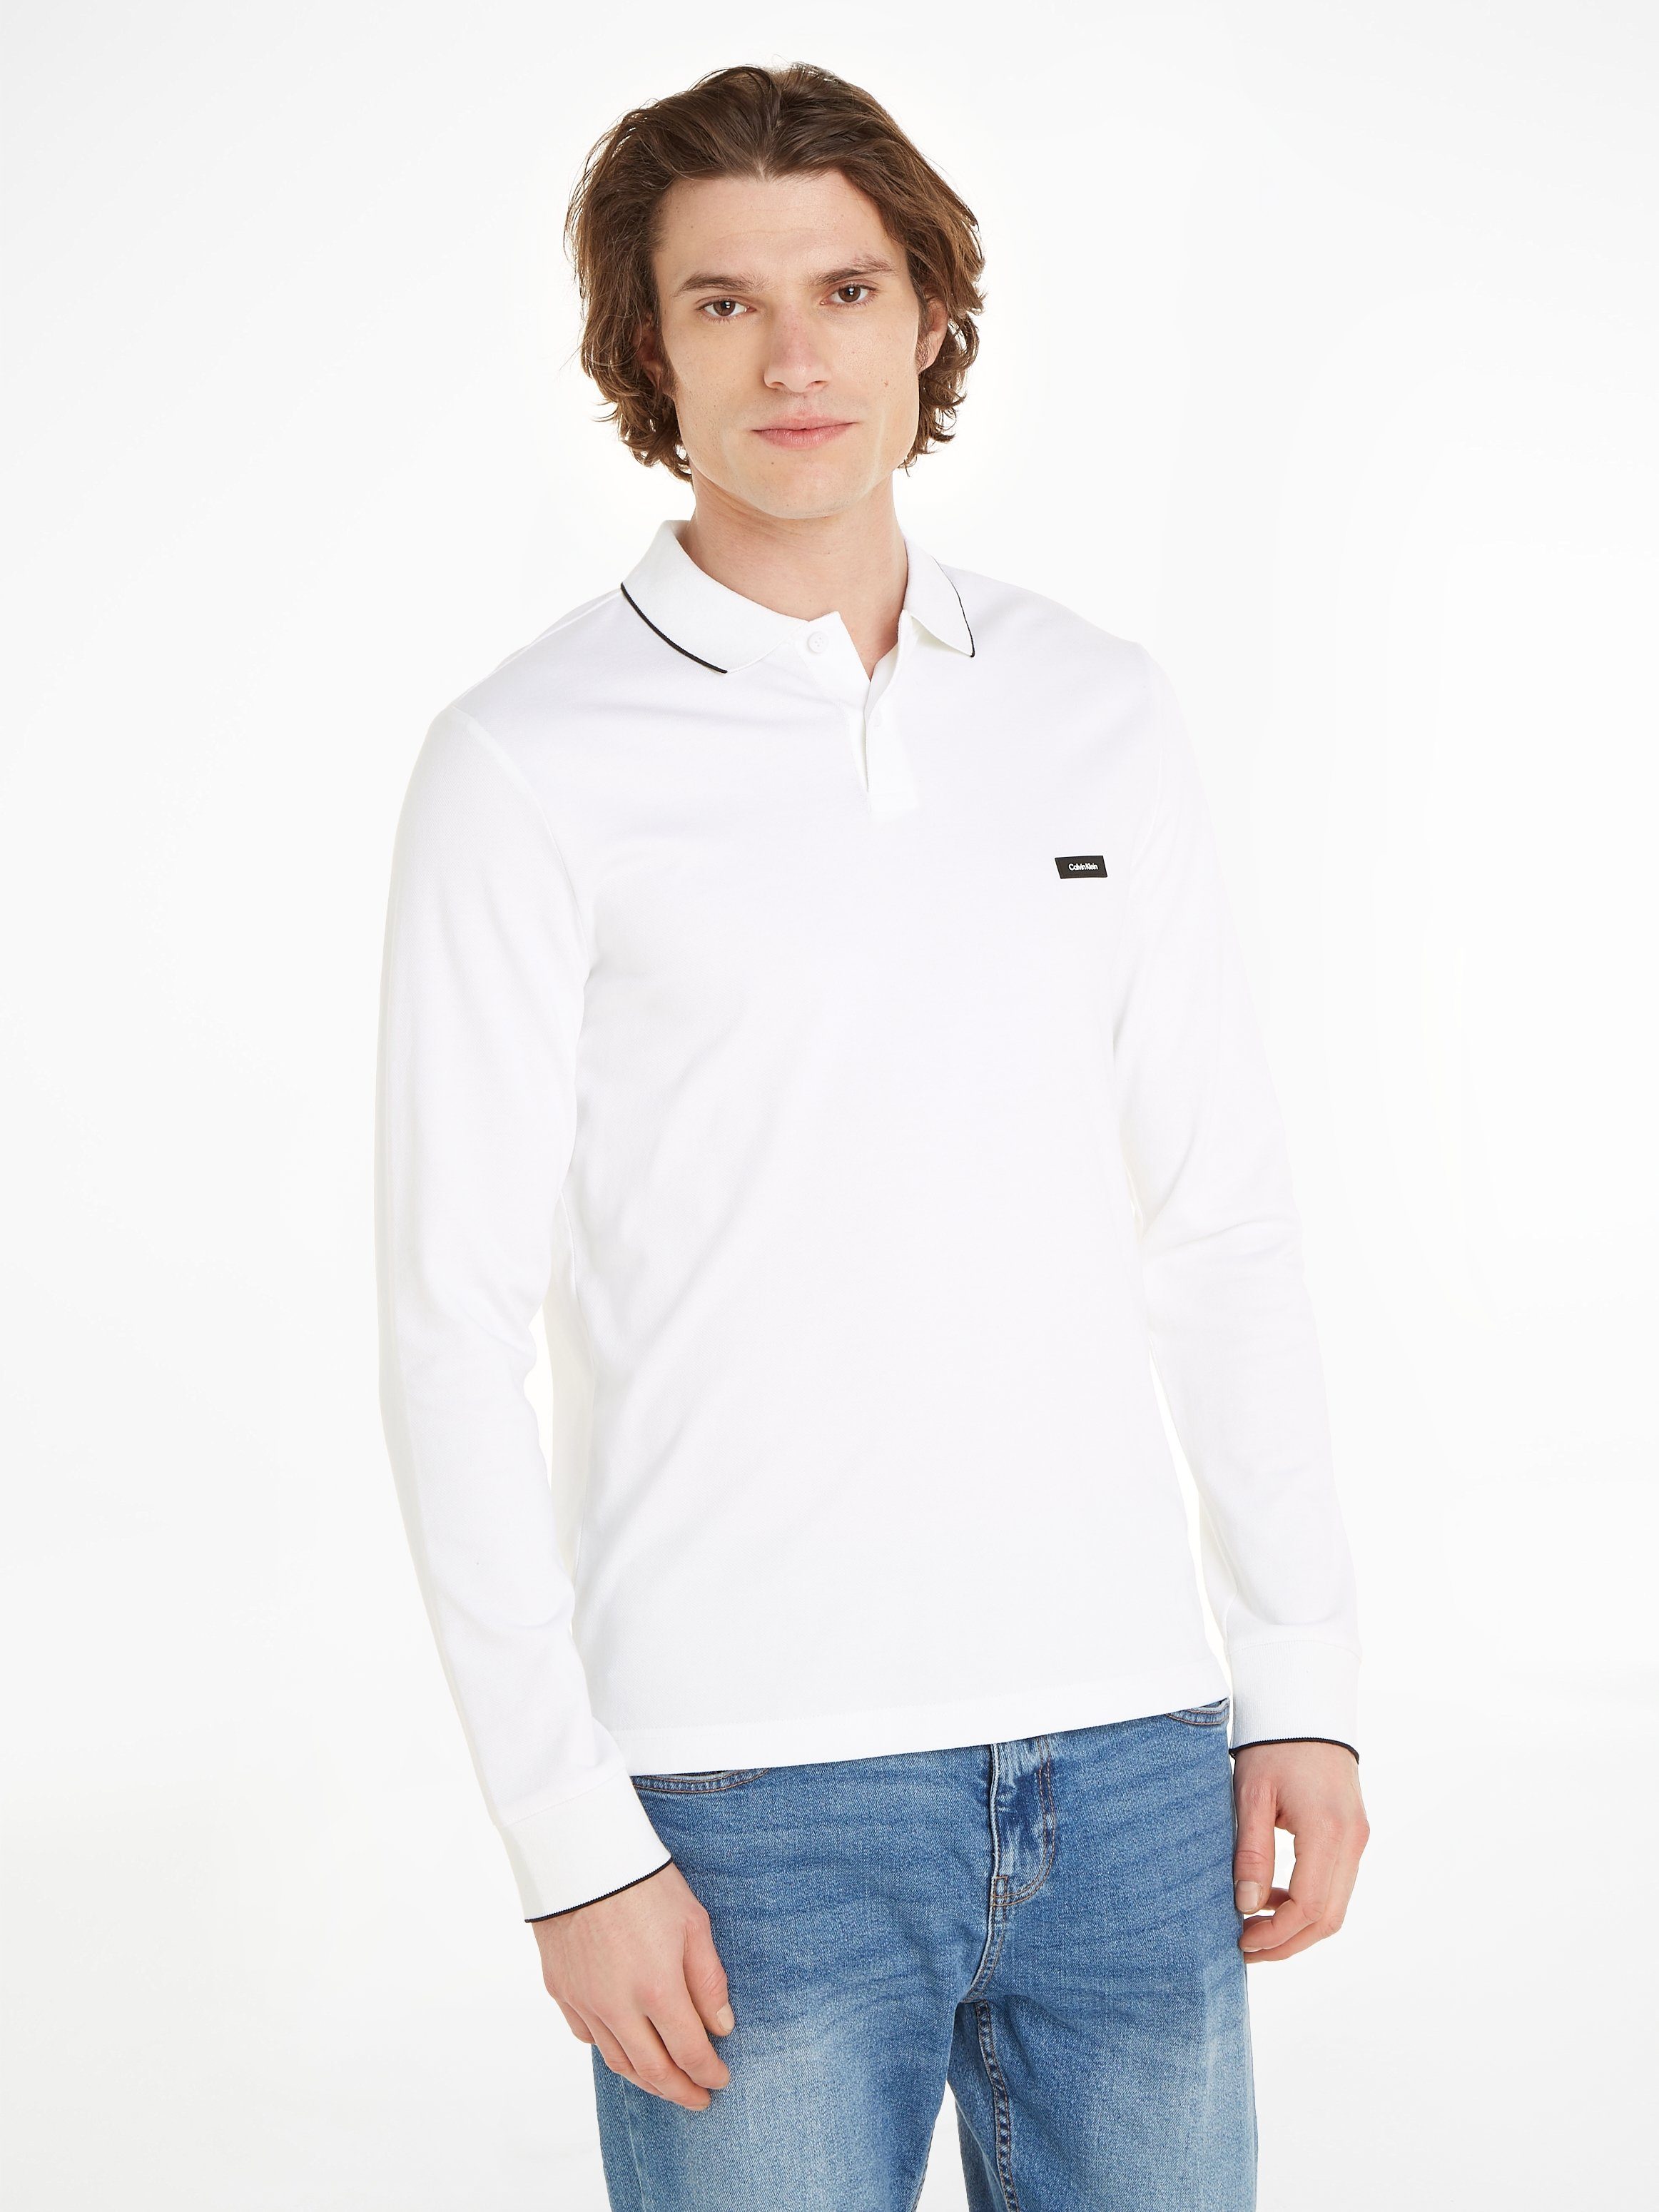 Calvin Klein Poloshirt STRETCH PIQUE Bright TIPPING POLO Markenlabel LS mit White